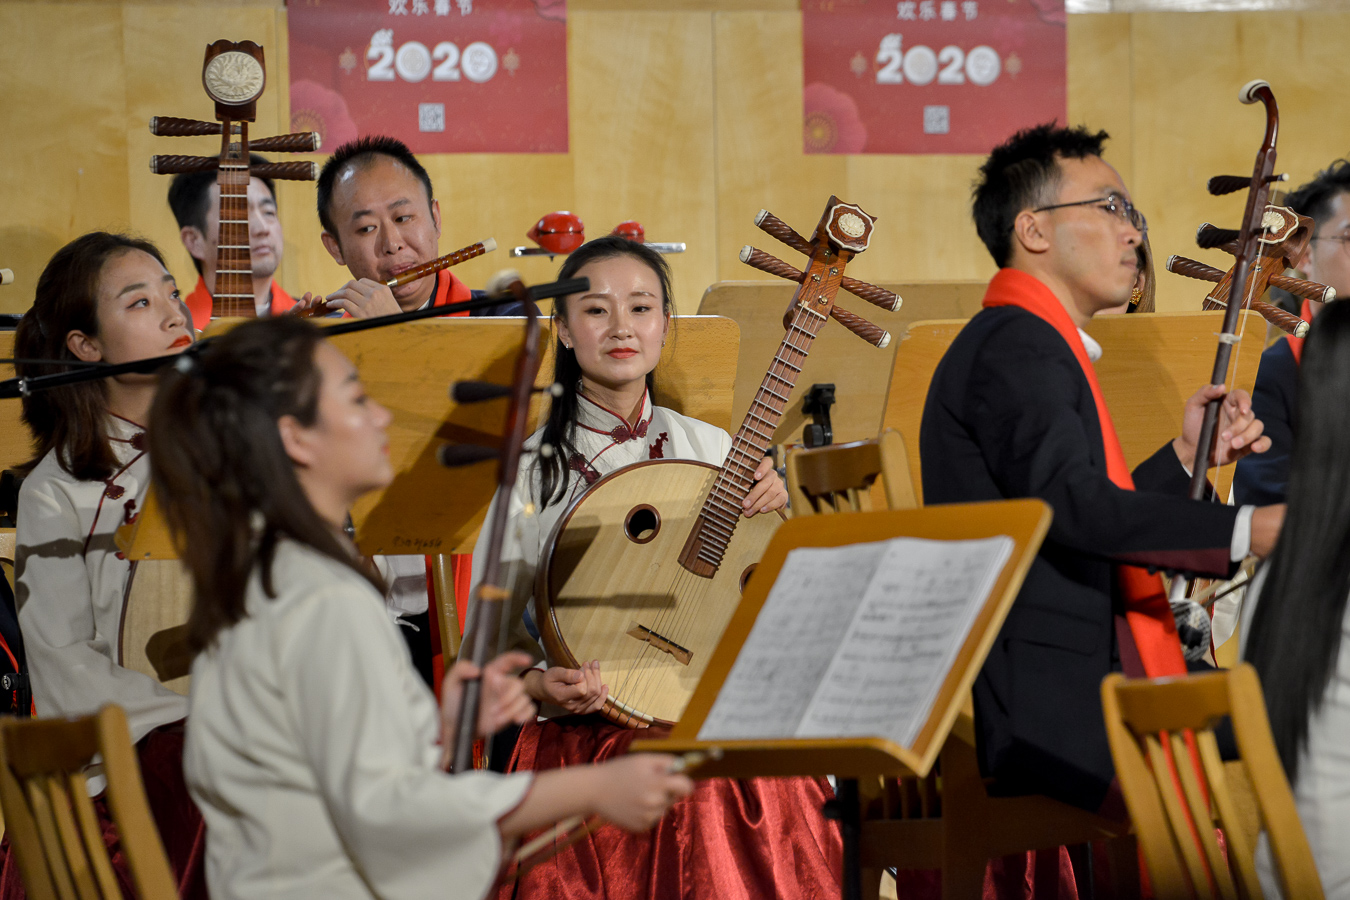 Chiński Nowy Rok w szkole muzycznej w Opolu [WIDEO, ZDJĘCIA]